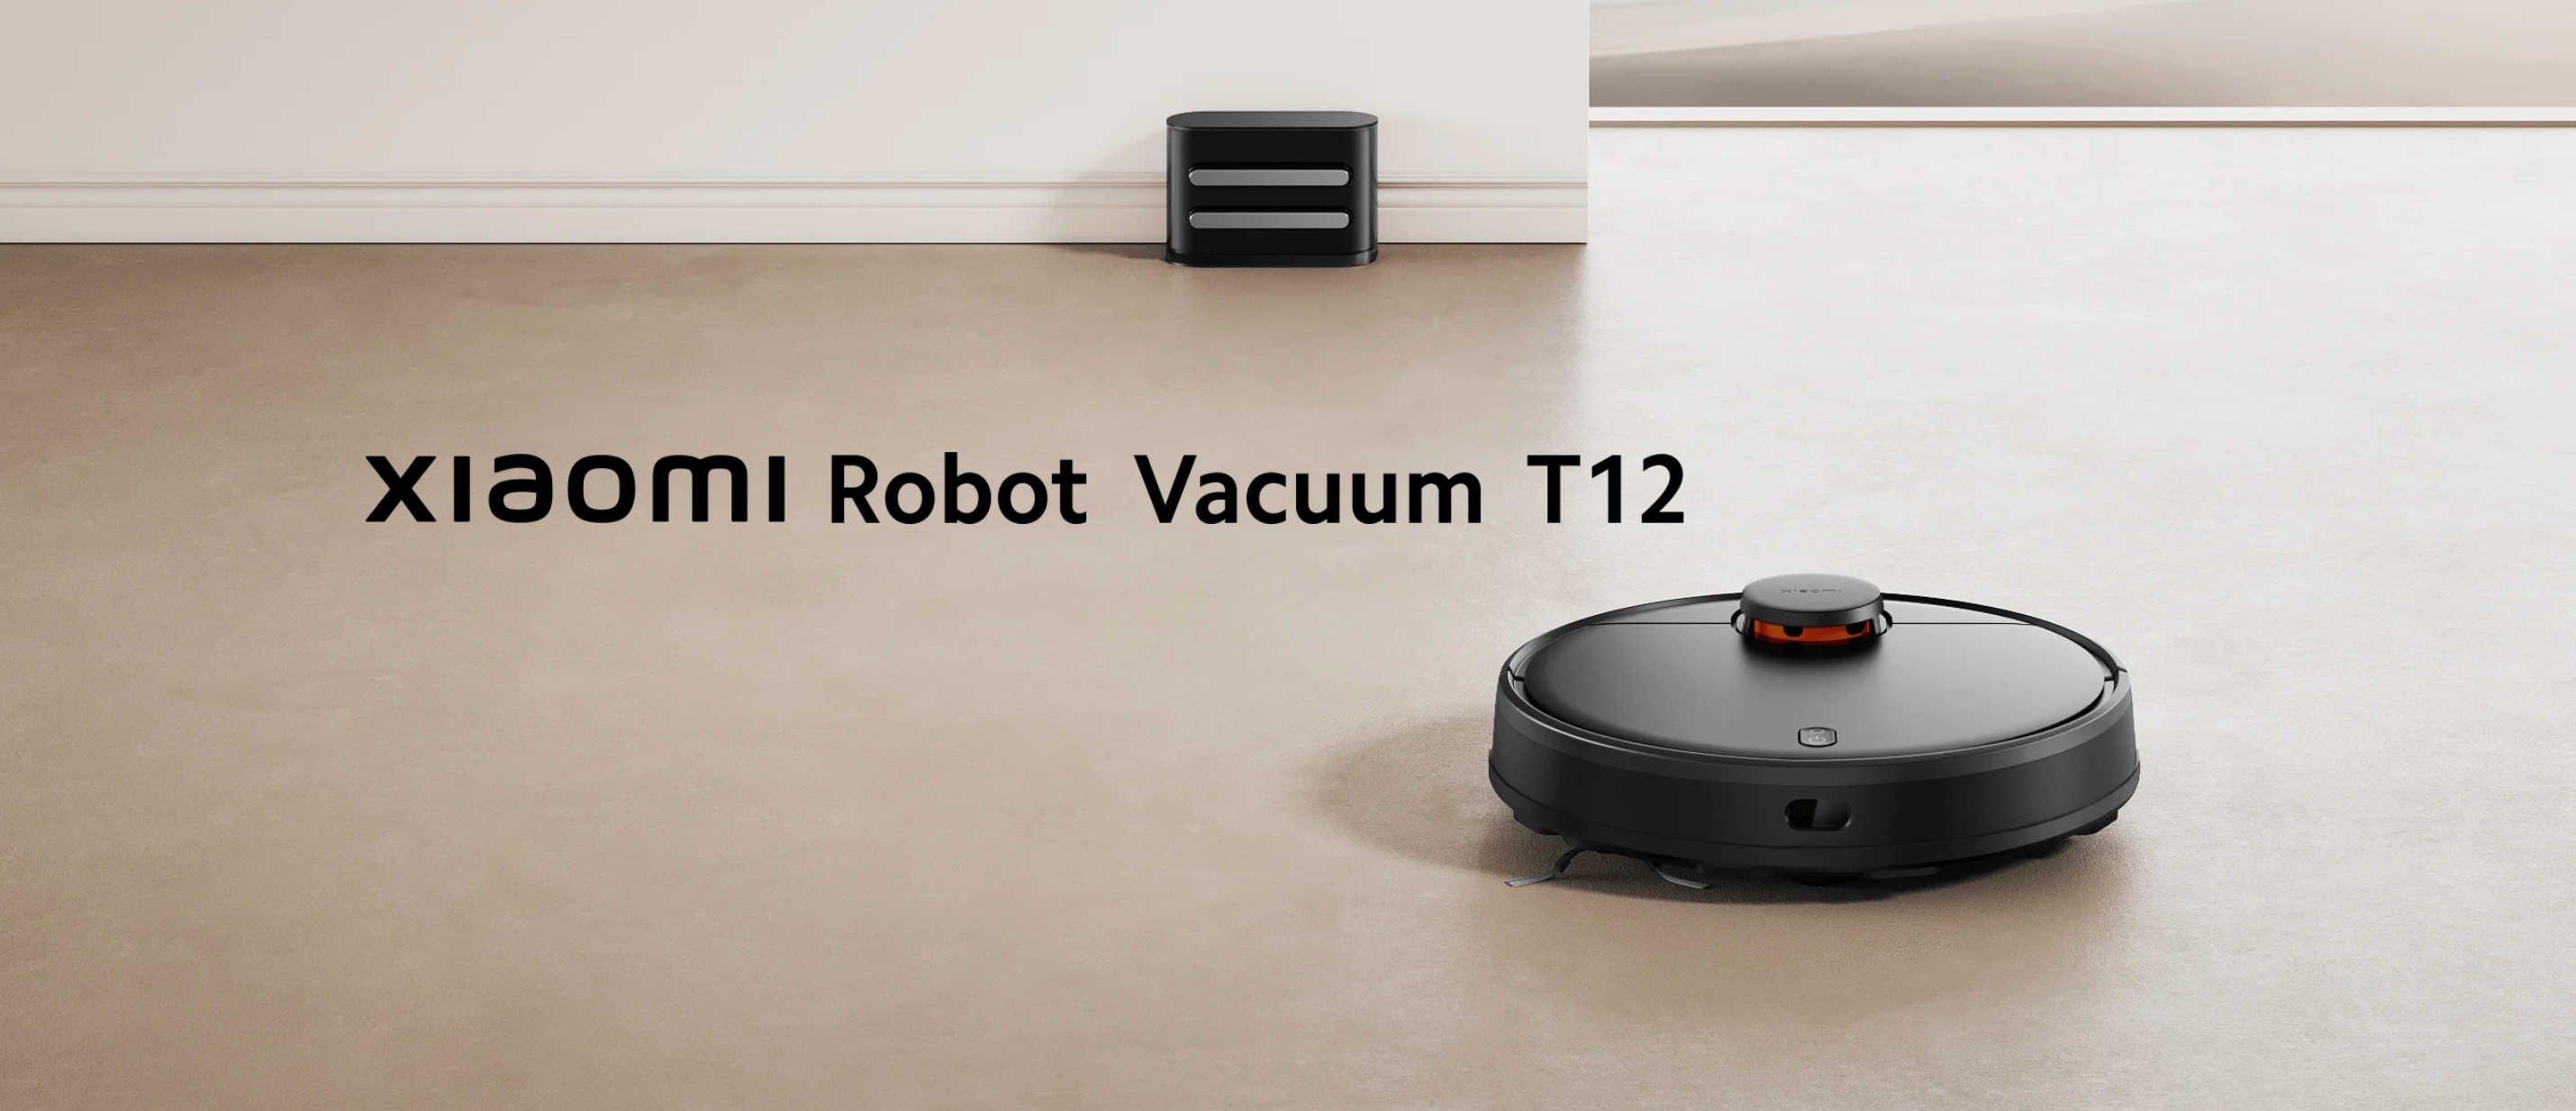 Desde 169 euros: Xiaomi Robot Vacuum T12 debutó en Europa